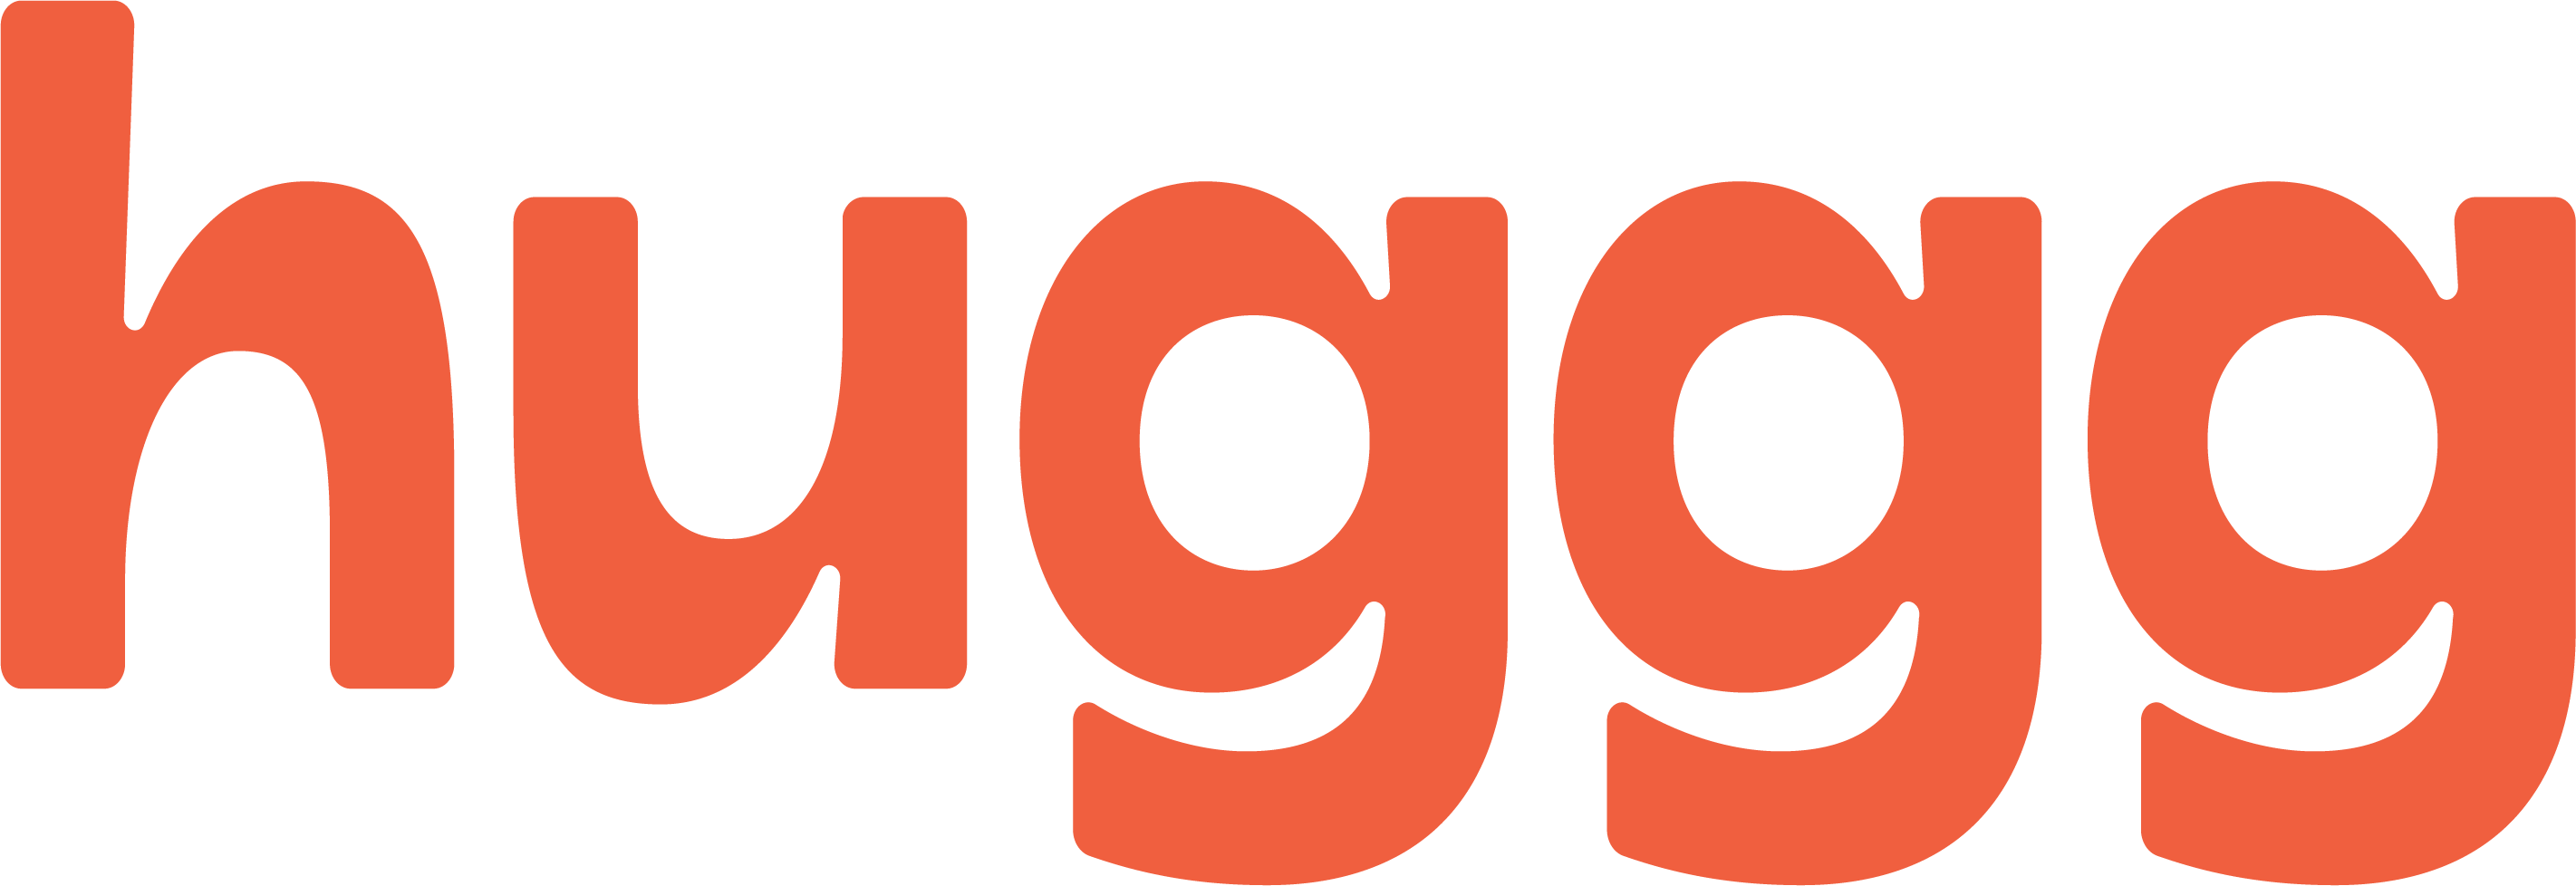 huggg logo_red-1